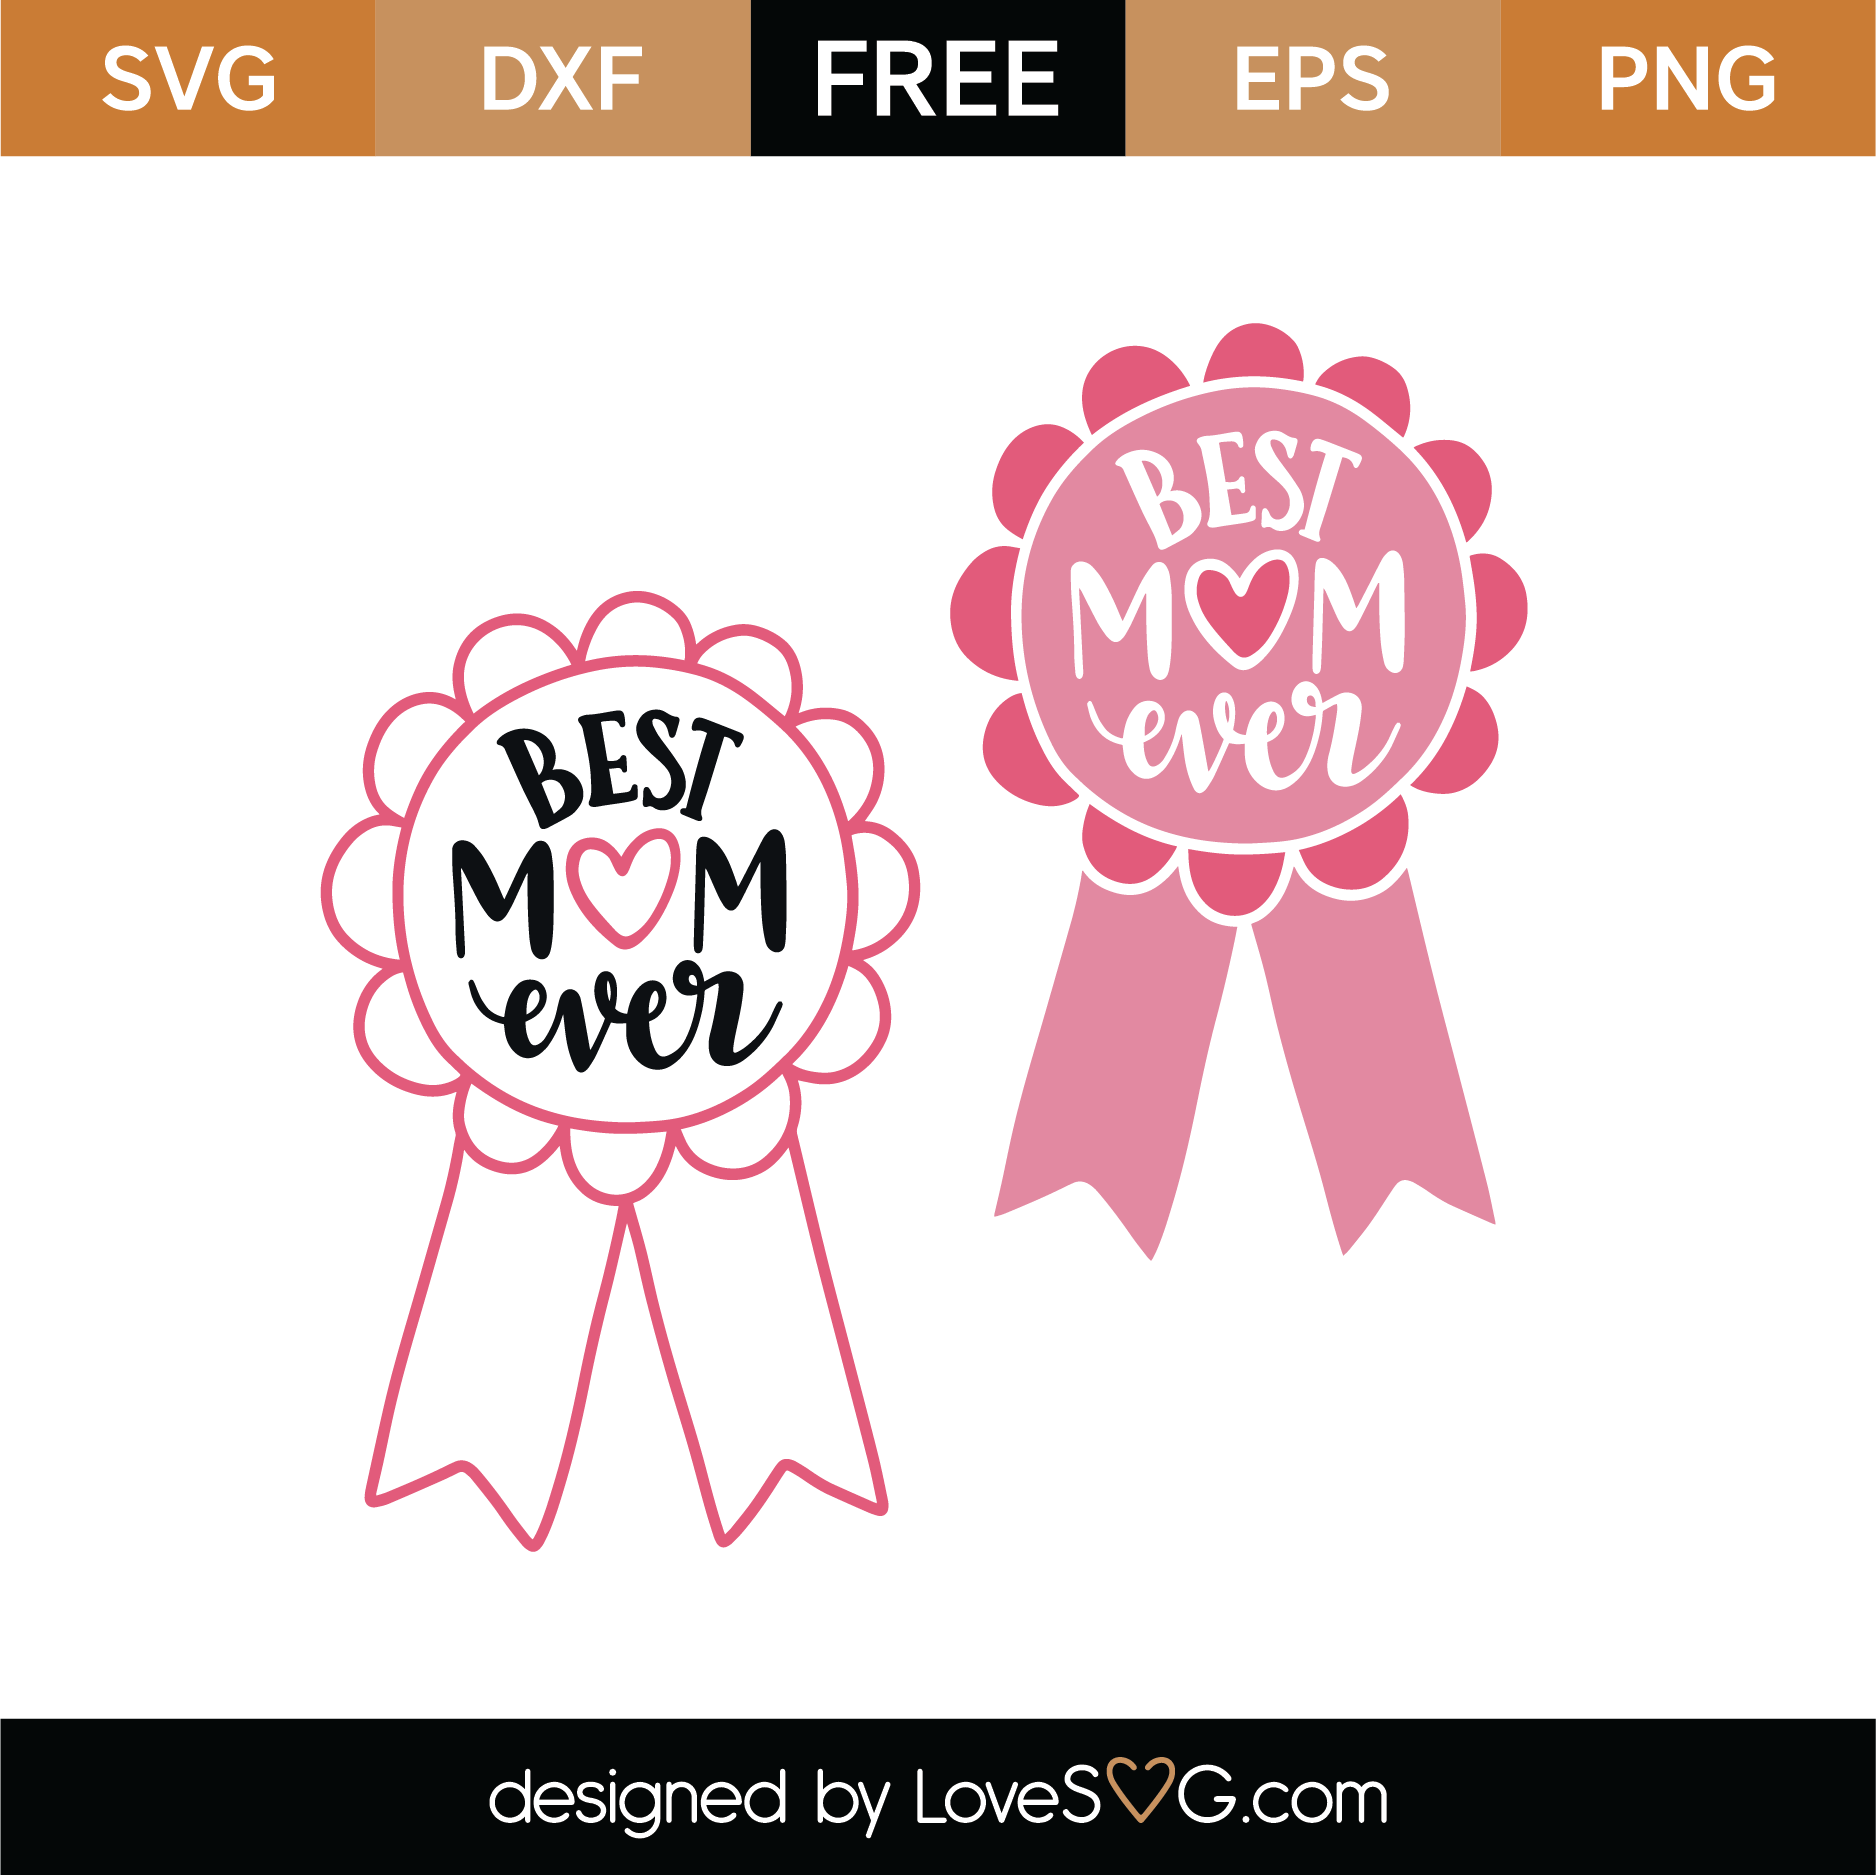 Download Free Best Mom Ever SVG Cut File | Lovesvg.com